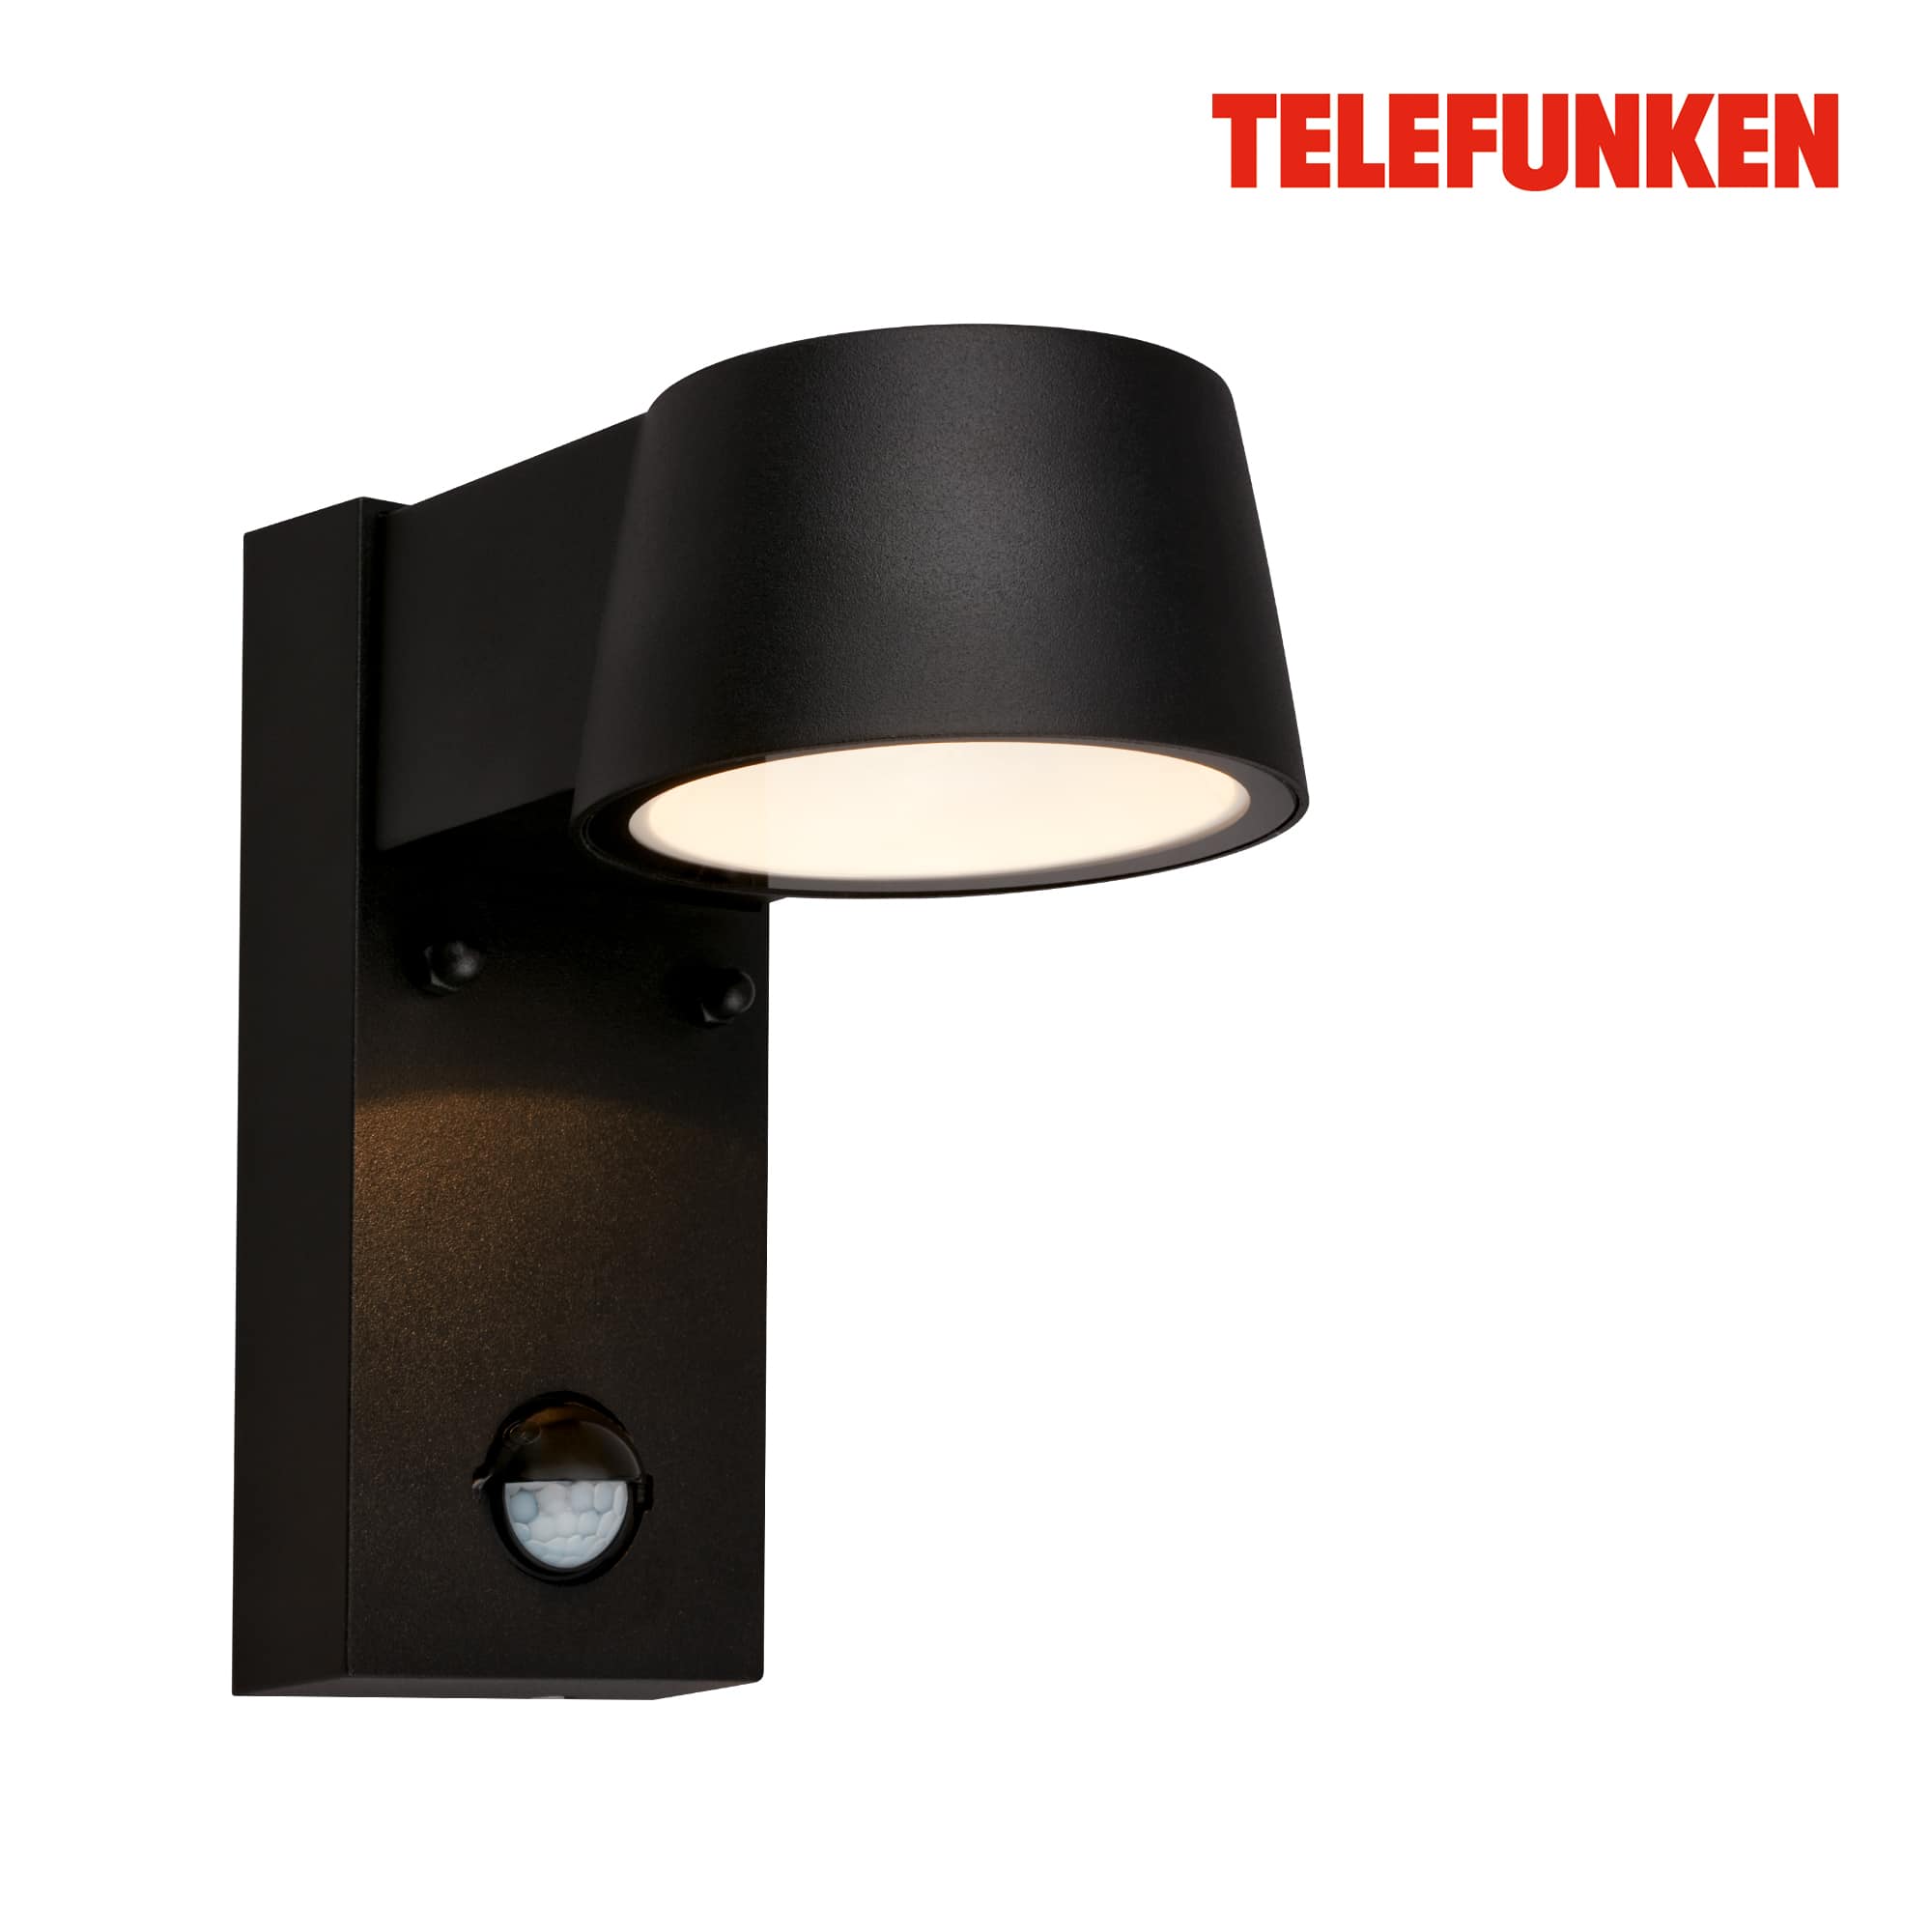 Telefunken LED wandlamp, bewegingsmelder, schemersensor, zwart